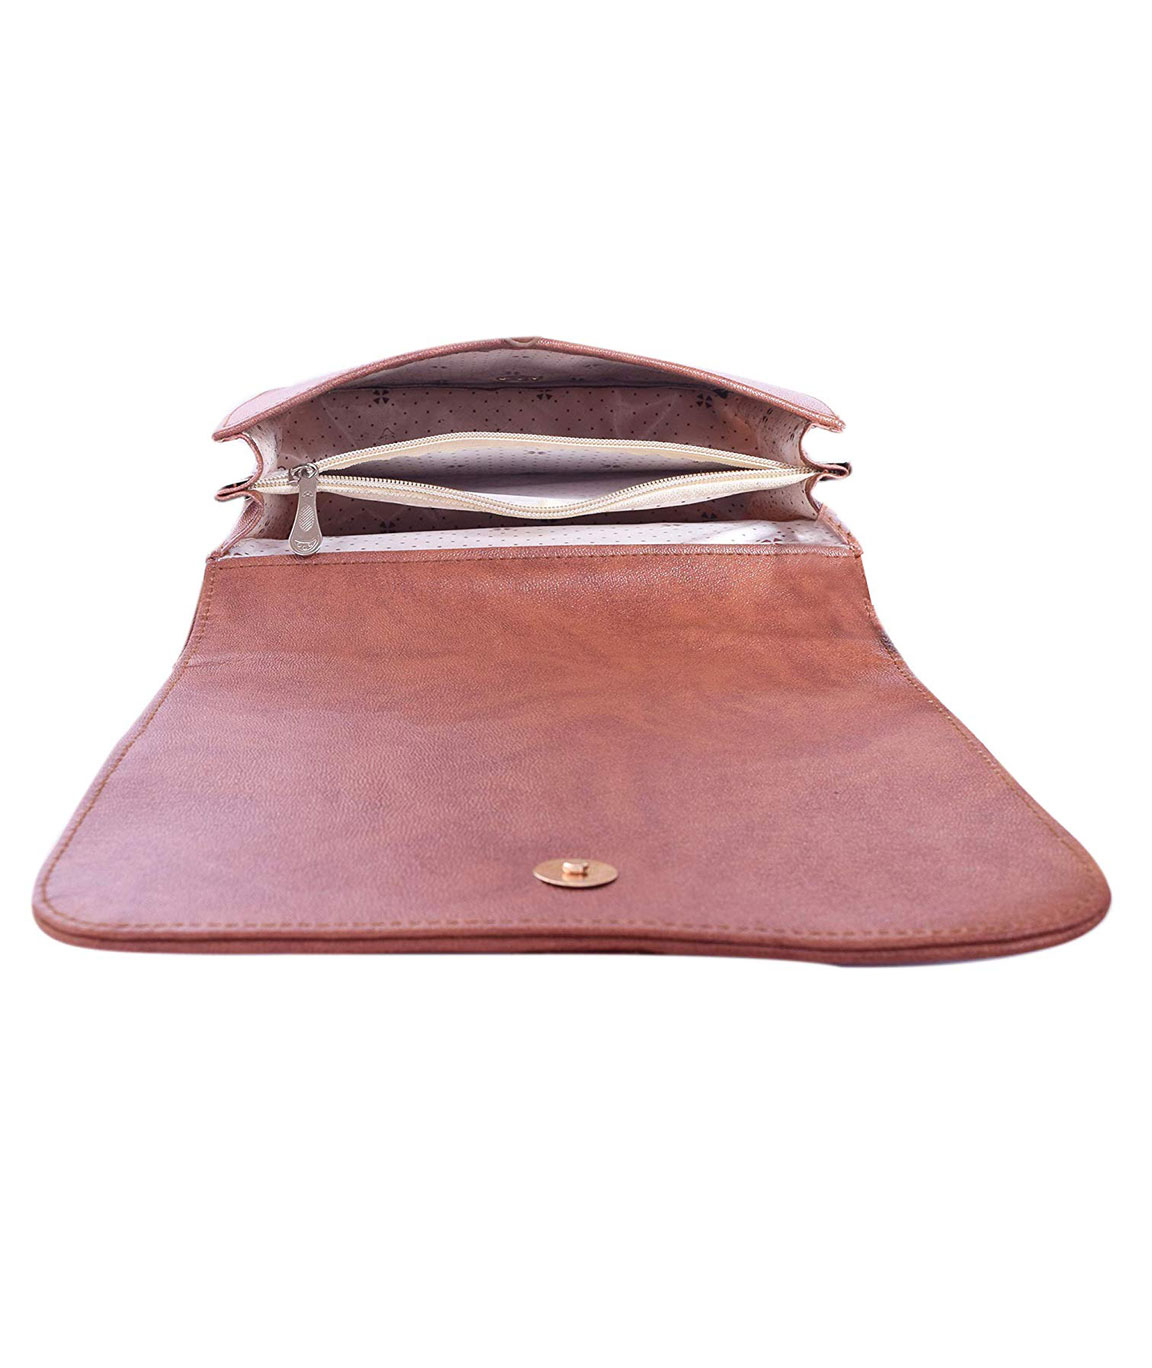 Leather Shoulder Bag - Le Donne Leather